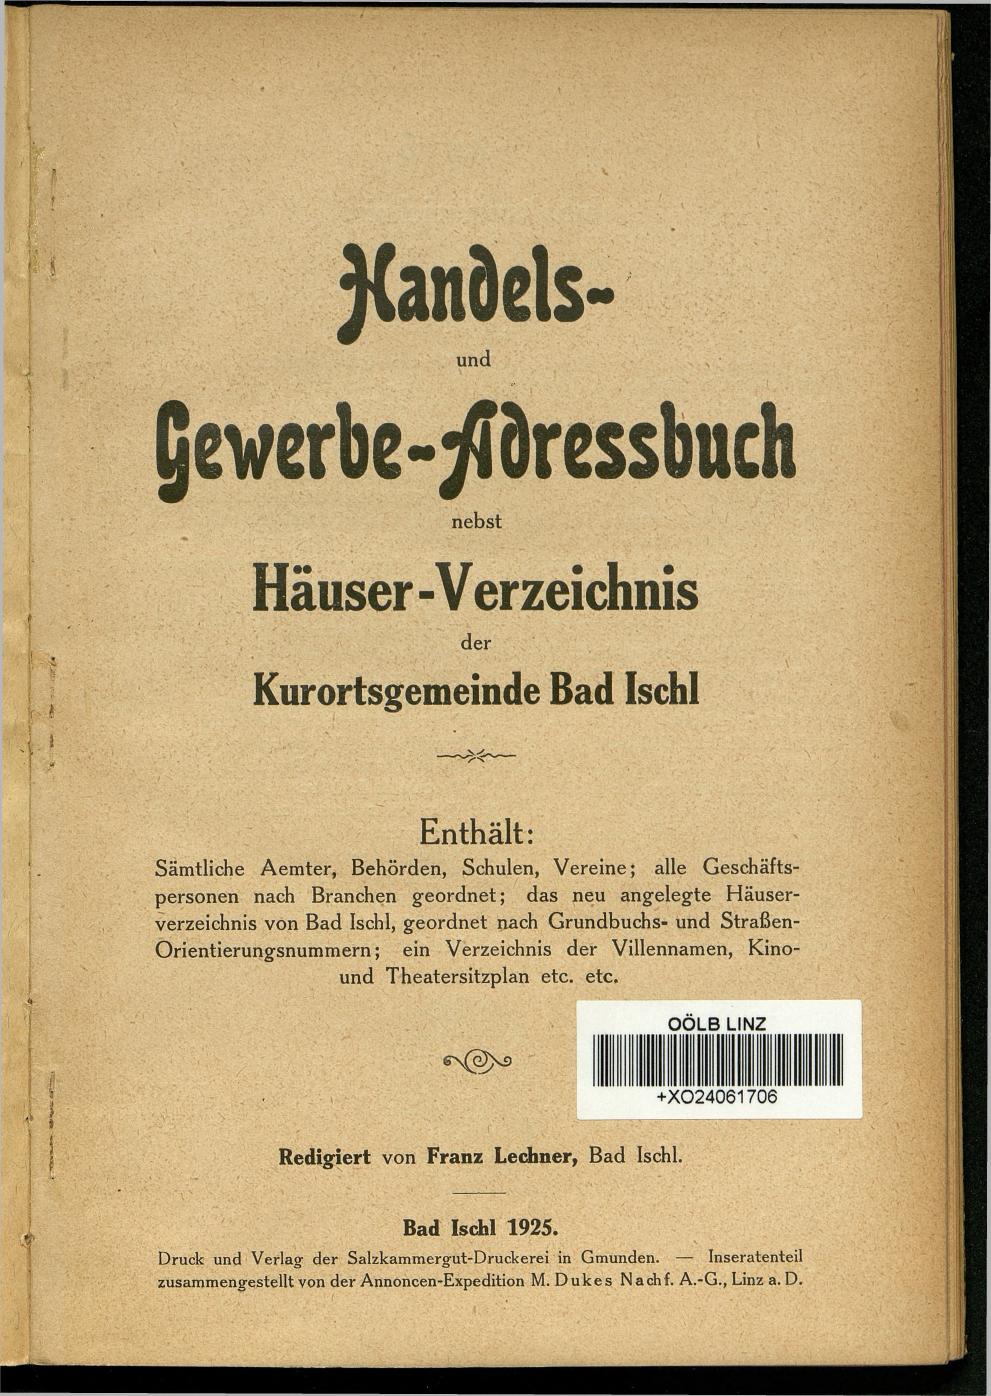 Handels- und Gewerbe-Adressbuch nebst Häuser-Verzeichnis der Kurortsgemeinde Bad Ischl 1925 - Seite 5